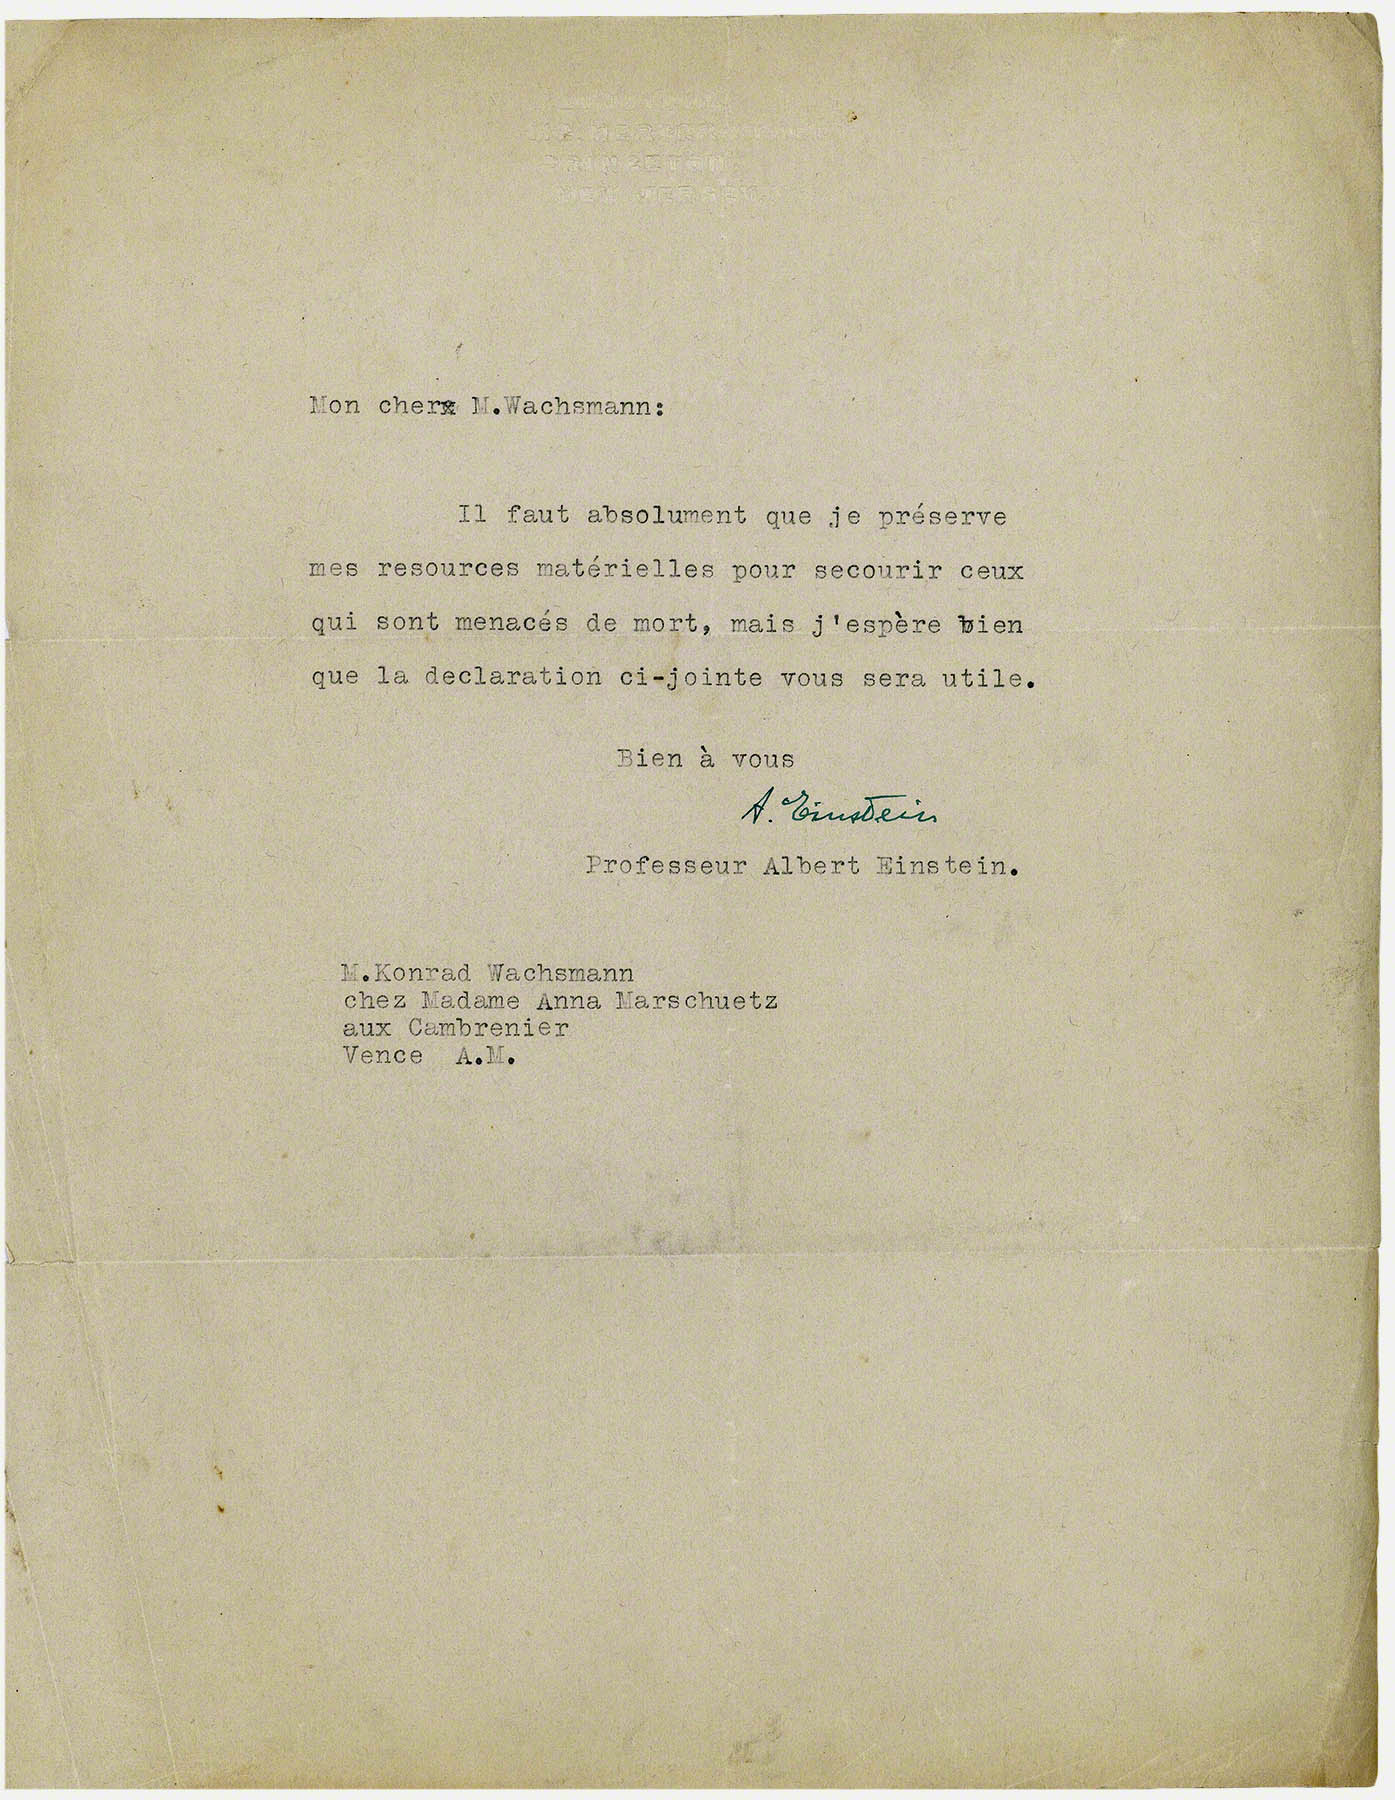 Letter: Albert Einstein, recommendation for Wachsmann